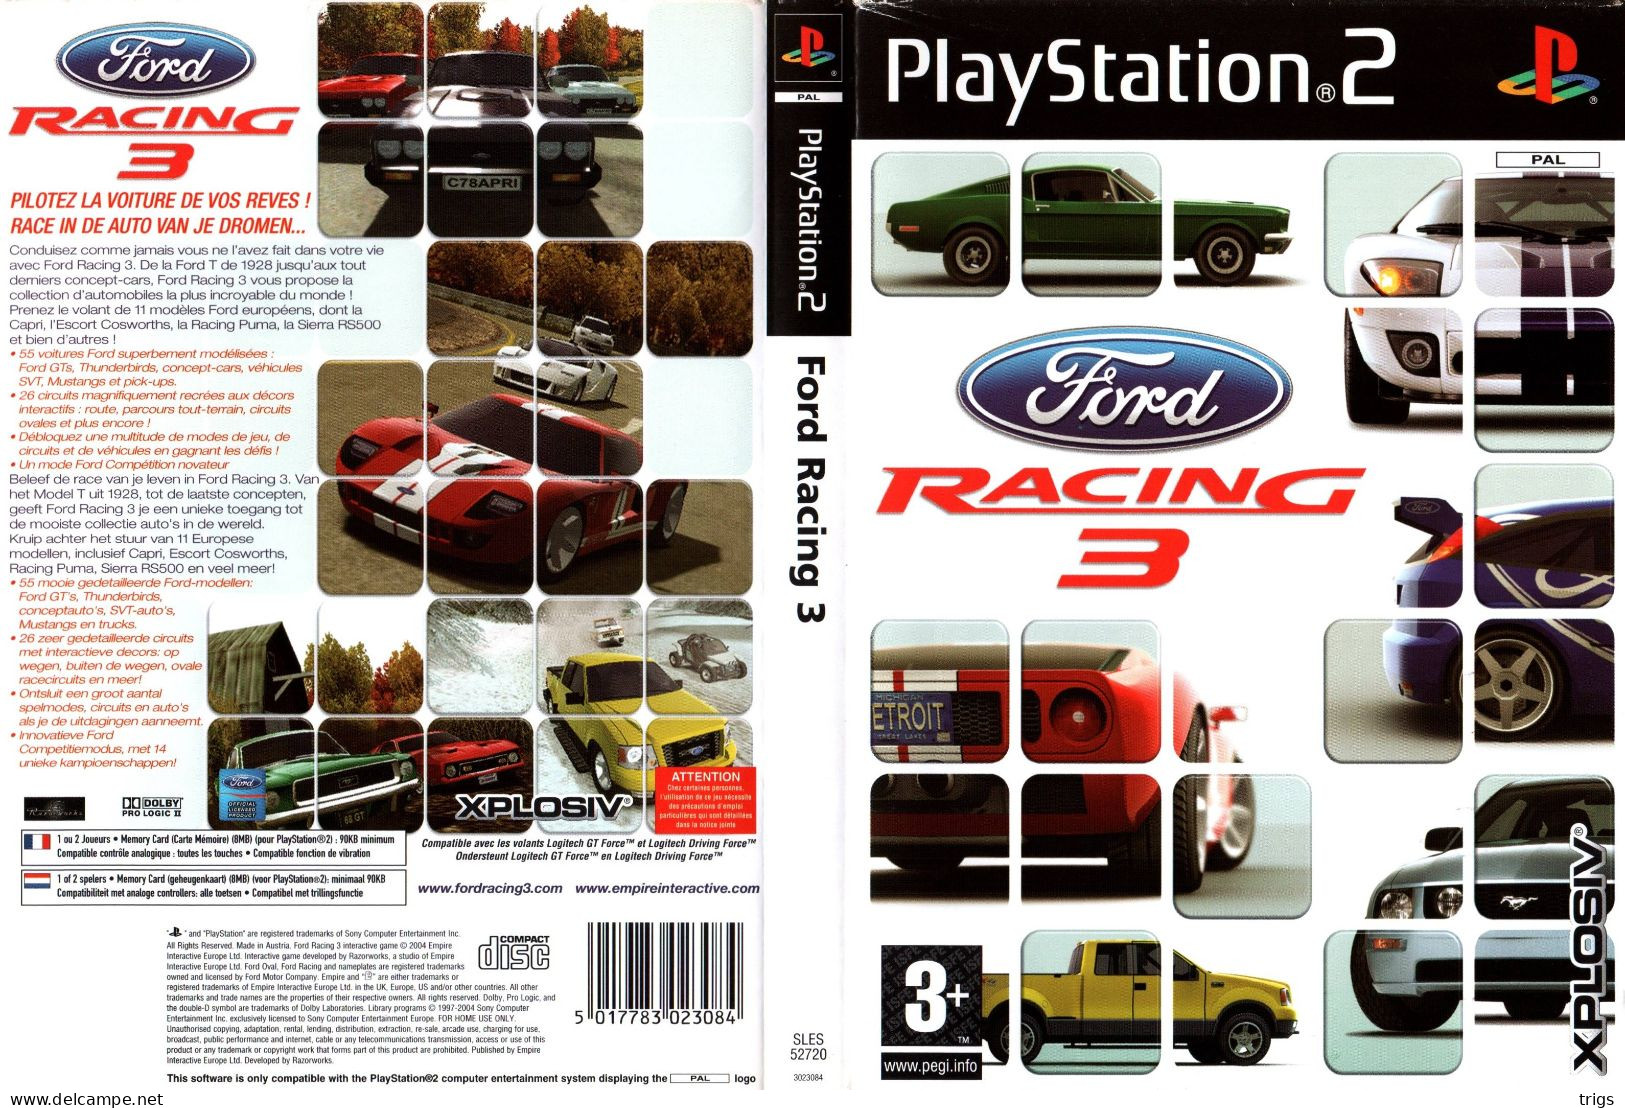 PlayStation 2 - Ford Racing 3 - Playstation 2